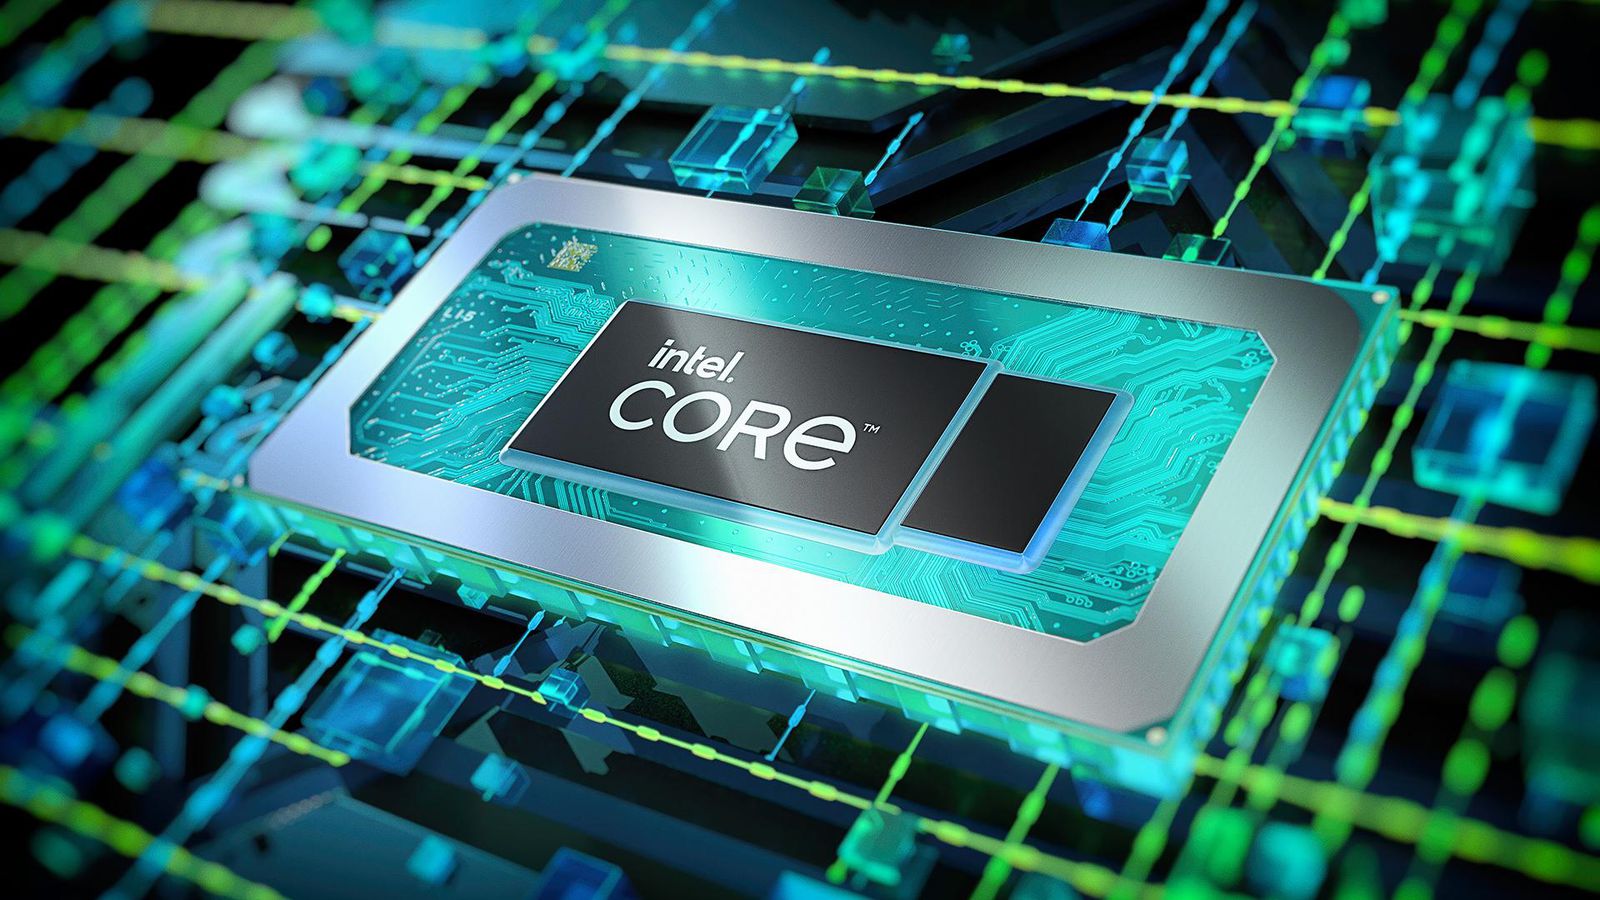 Bộ vi xử lý core i9: Nâng cao trải nghiệm công việc và giải trí của bạn với bộ vi xử lý core i9 đỉnh cao. Với hiệu suất ấn tượng và khả năng xử lý đỉnh cao, việc làm chuyên nghiệp và chơi game sẽ trở nên mượt mà và ấn tượng hơn bao giờ hết.